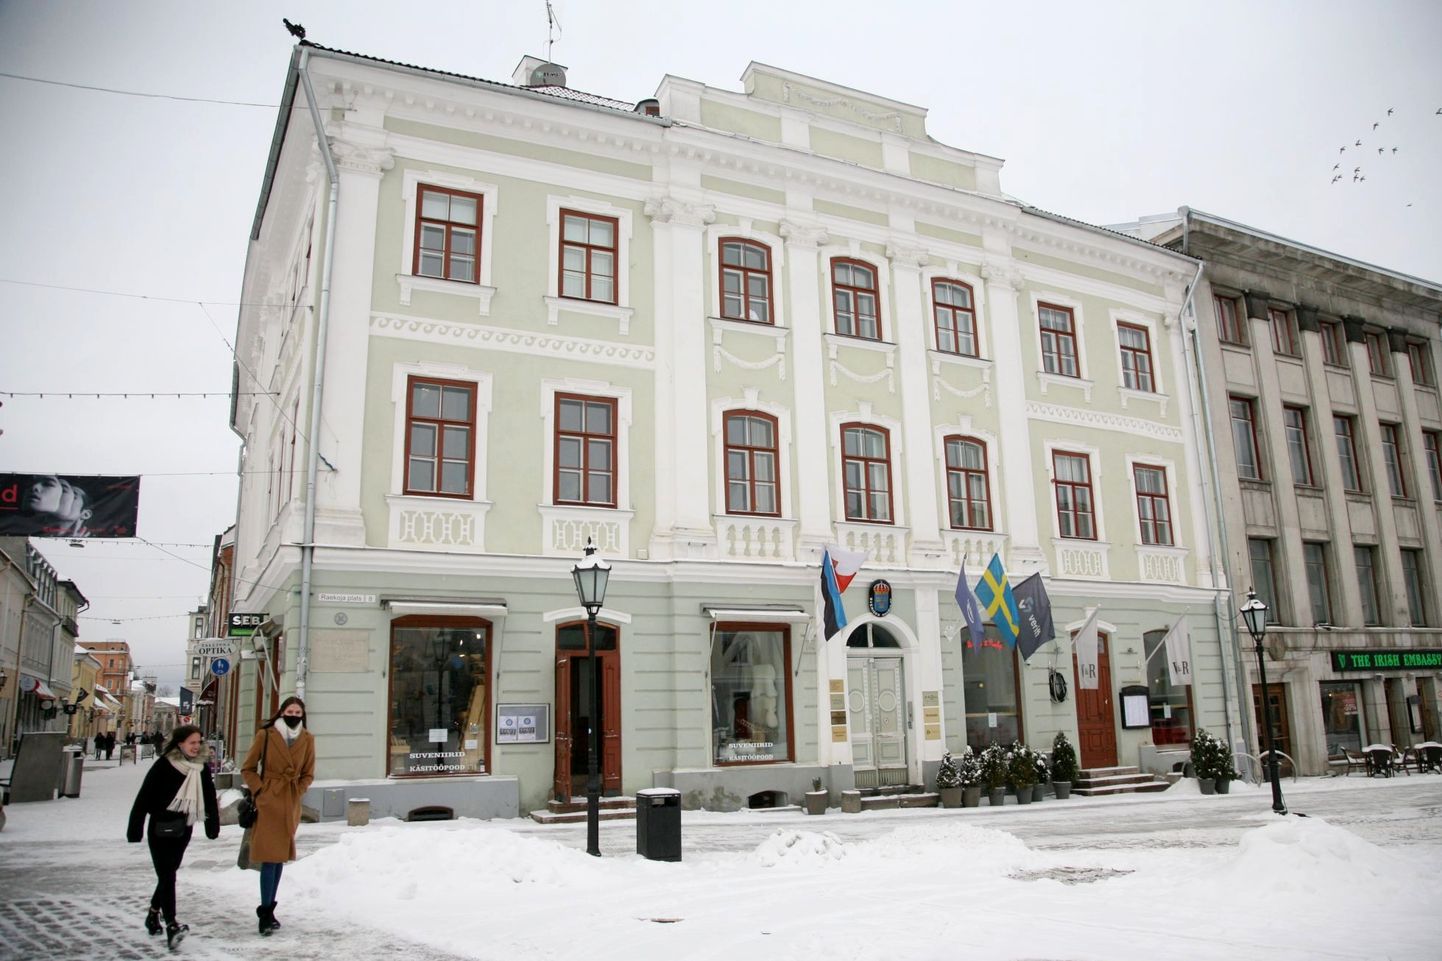 Hoone Tartus Raekoja plats 8, mille lähistele plaanib linn rajada kunstnik Konrad Mägi monumendi.